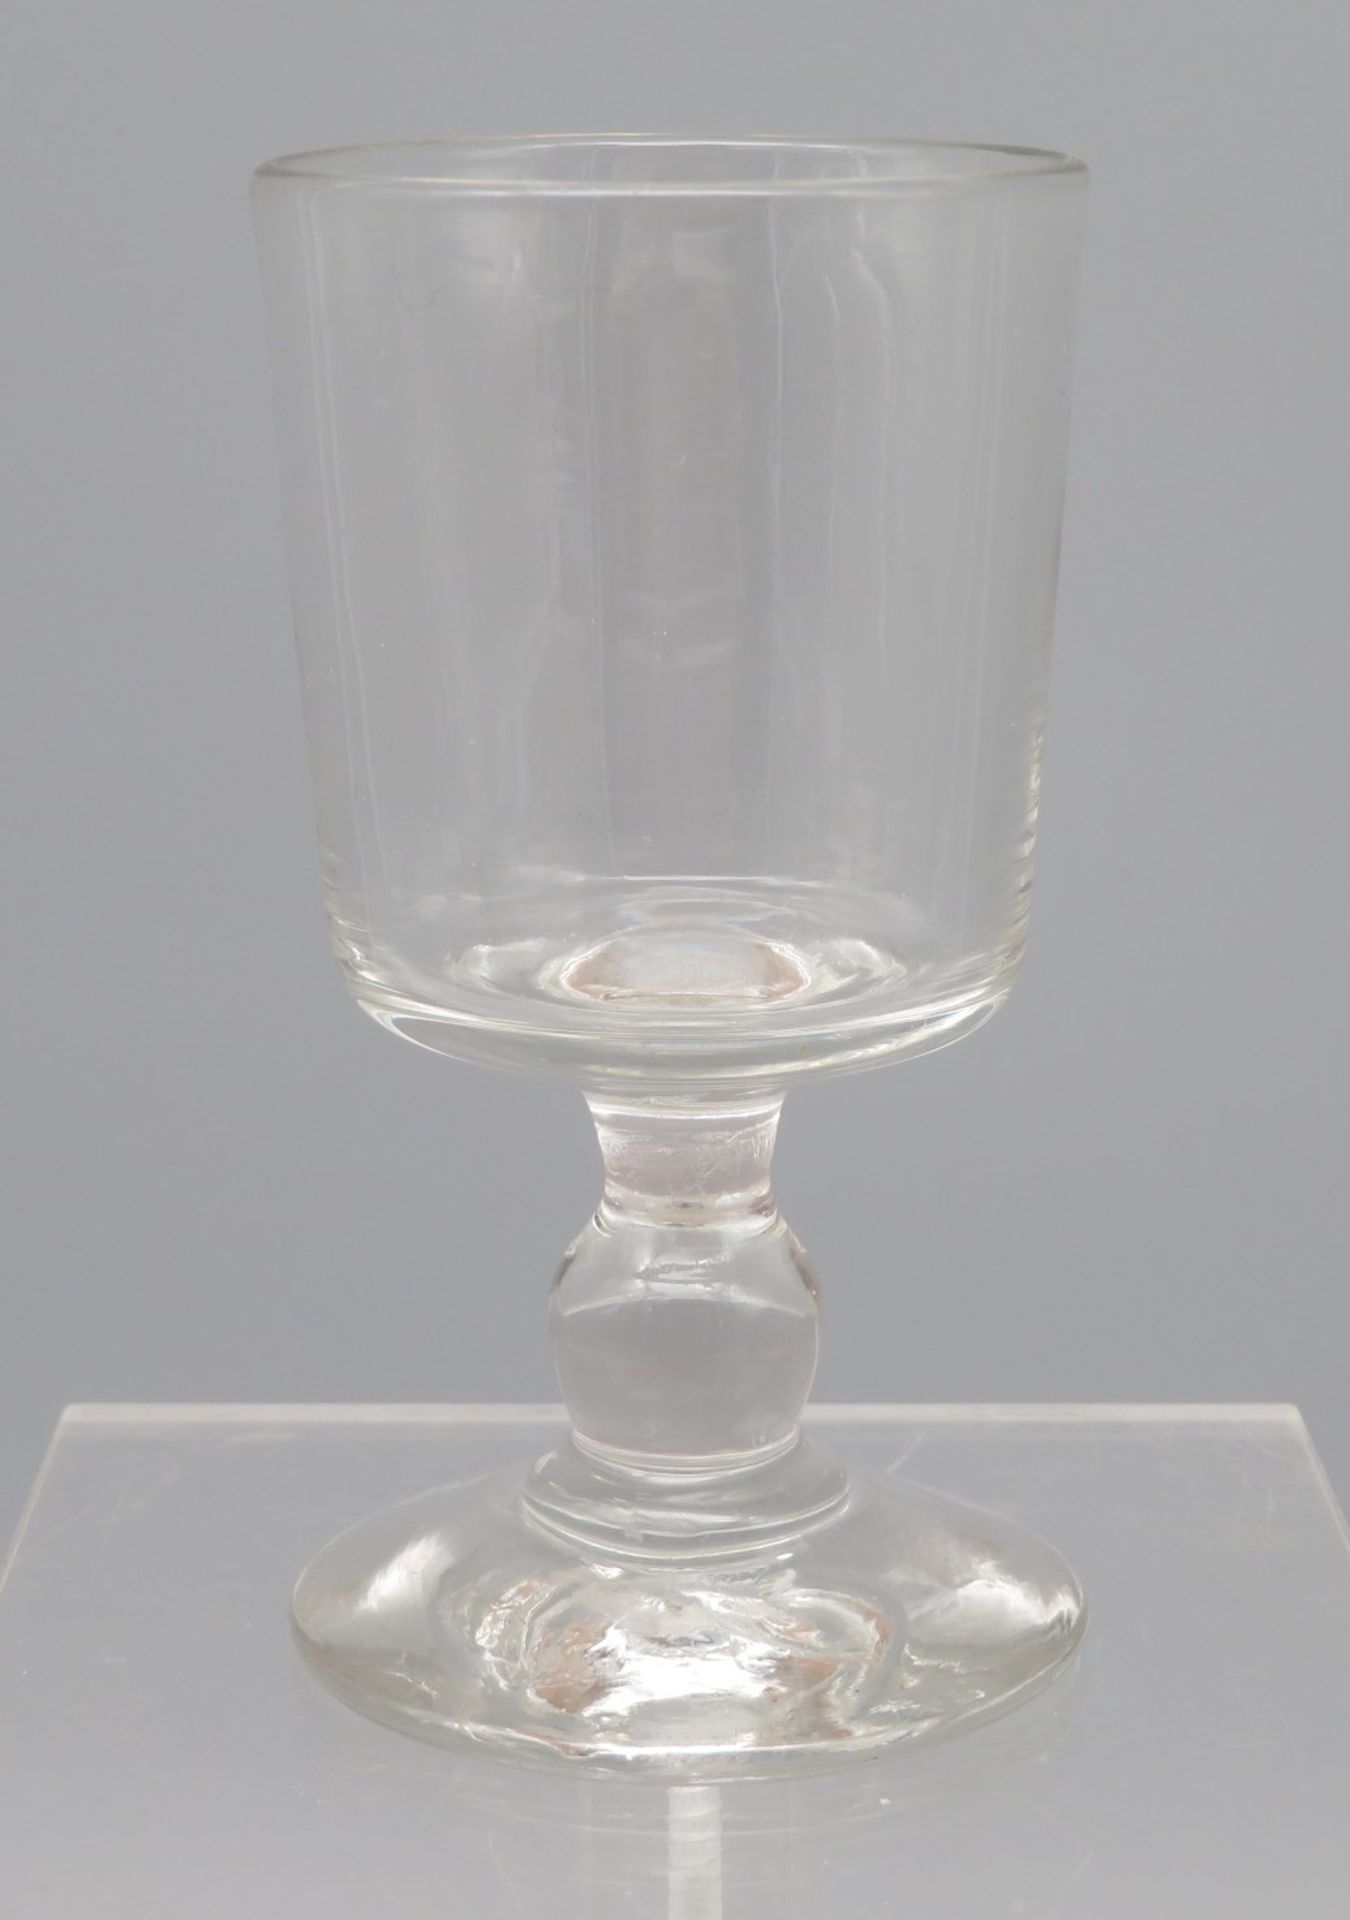 10 diverse Weingläser, 1. Hälfte 19. Jahrhundert, farbloses Glas, h 10,5 cm, d 5,5 cm. - Bild 2 aus 2